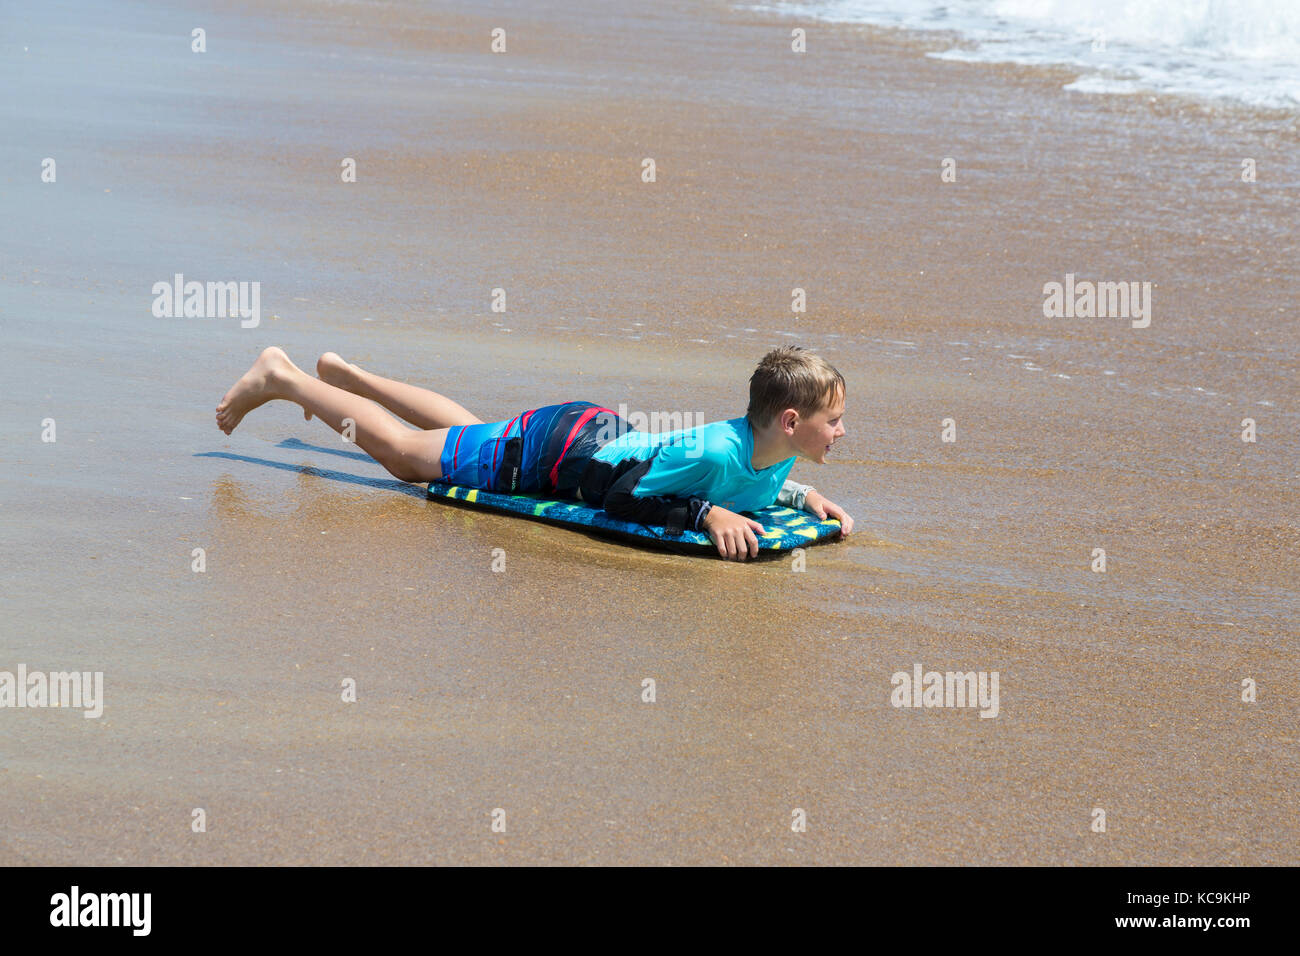 Avon, Outer Banks, Caroline du Nord, USA. Jeune garçon s'est échoué sur la plage avec sa planche de surf. Banque D'Images